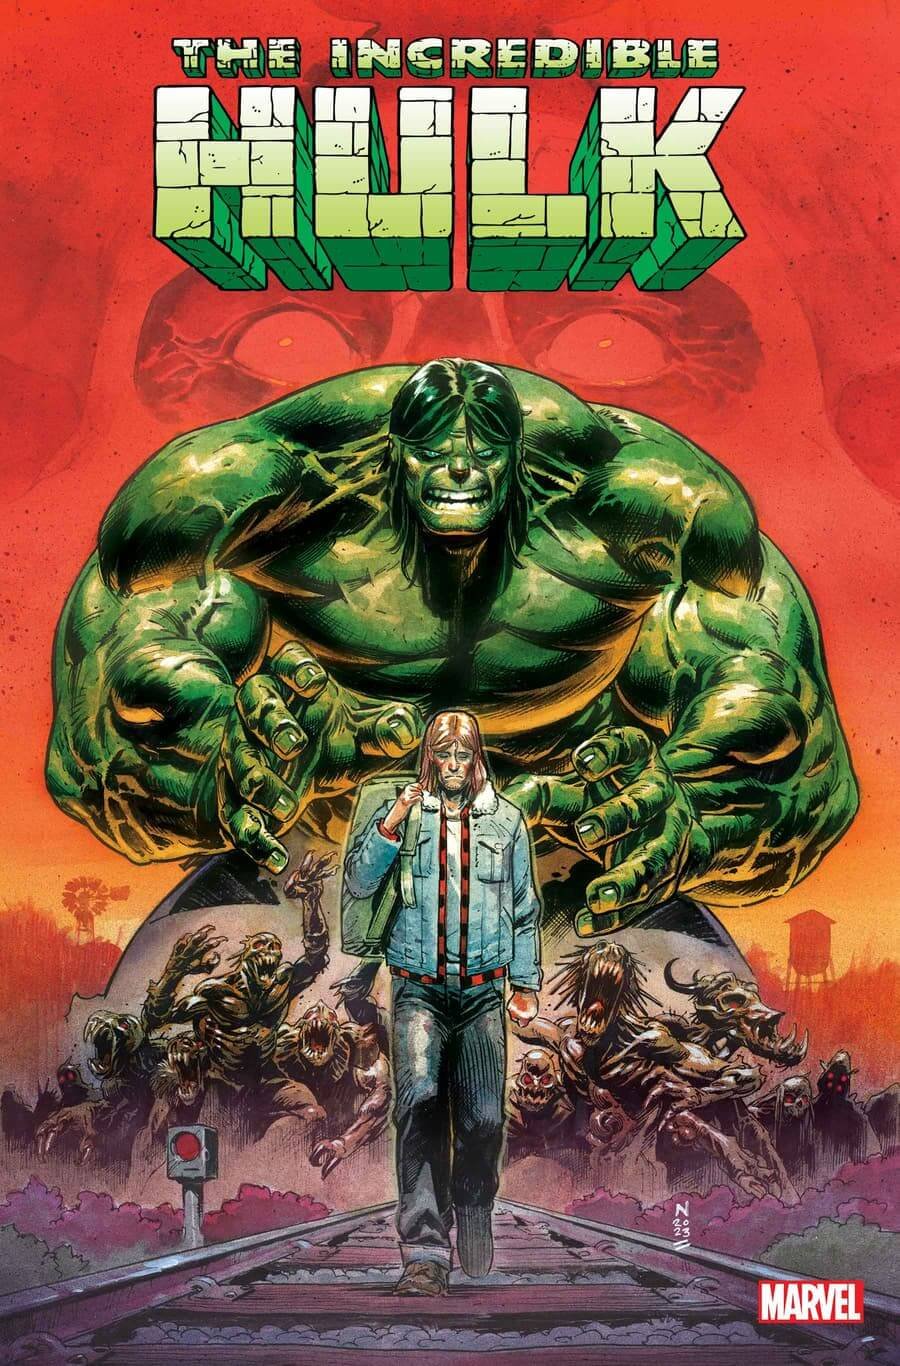 Couverture de L'Incroyable Hulk 1 par Nic Klein, avec le début de la guerre des monstres pour le Goliath vert.